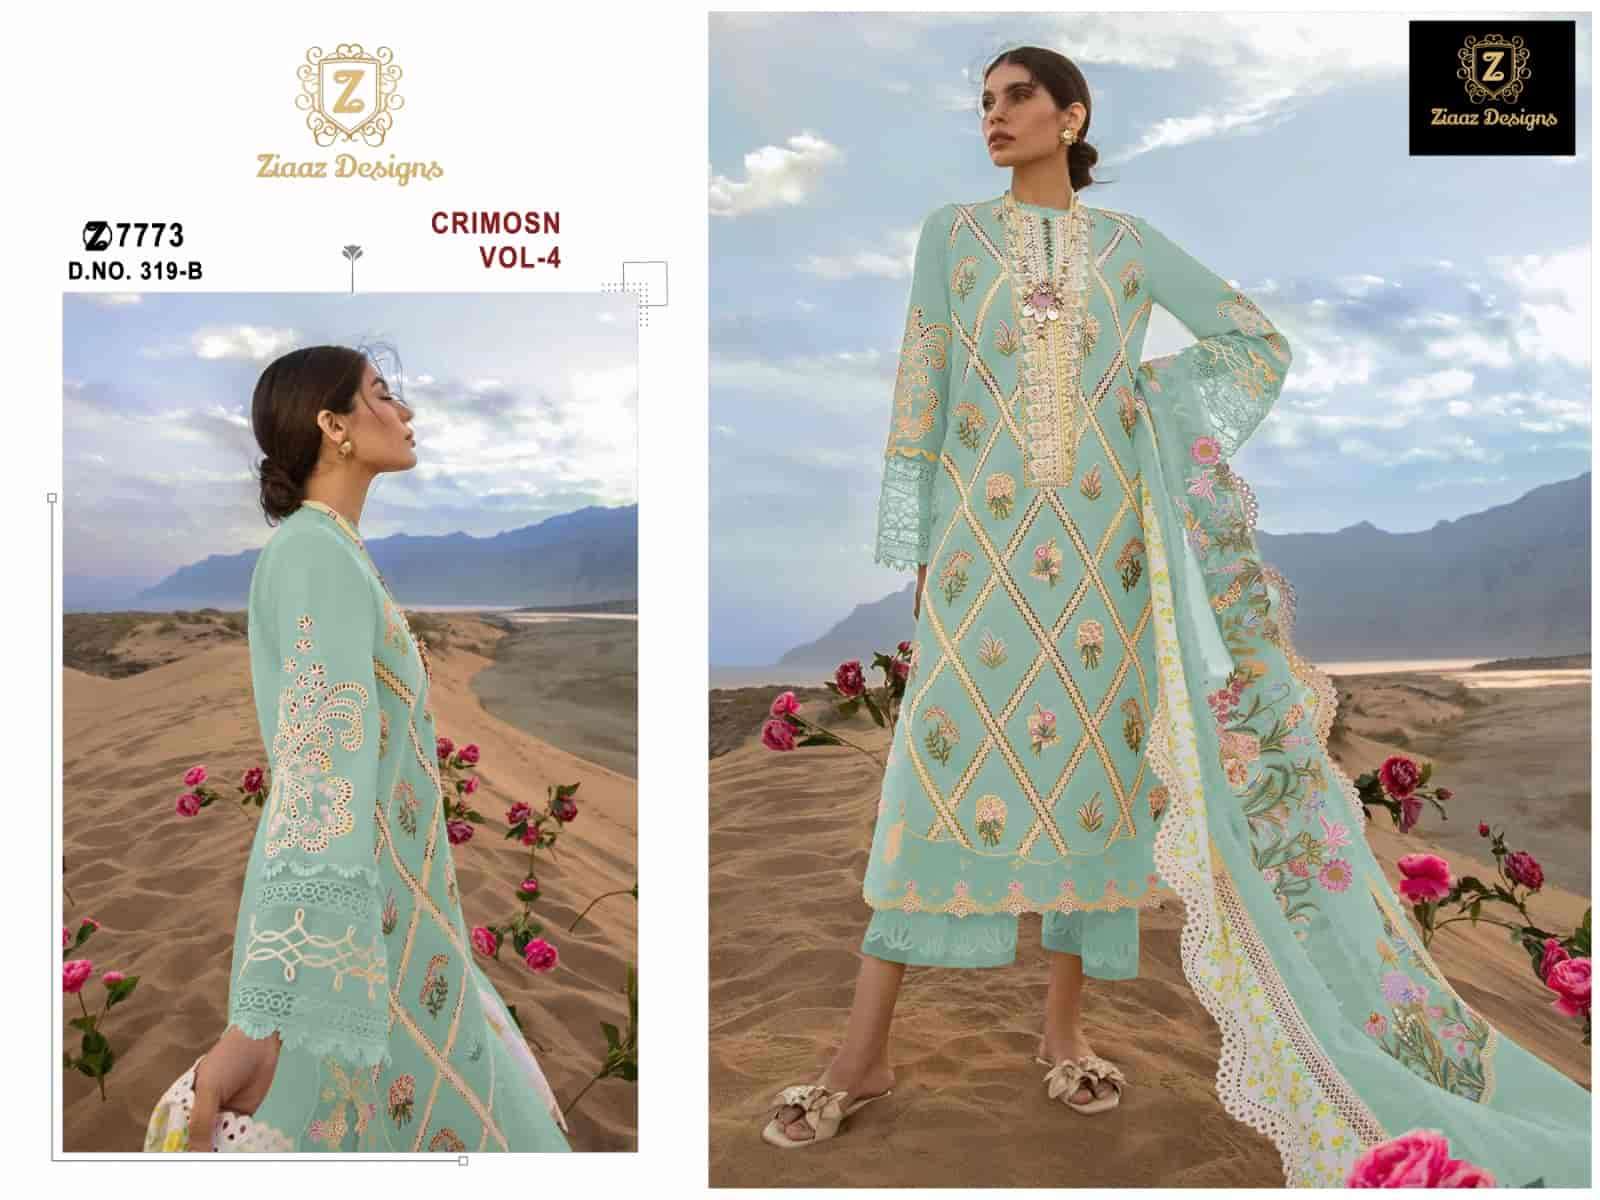 Ziaaz Designs 319 Colors Pakistani Festive Wear Cotton Salwar Suit Supplier